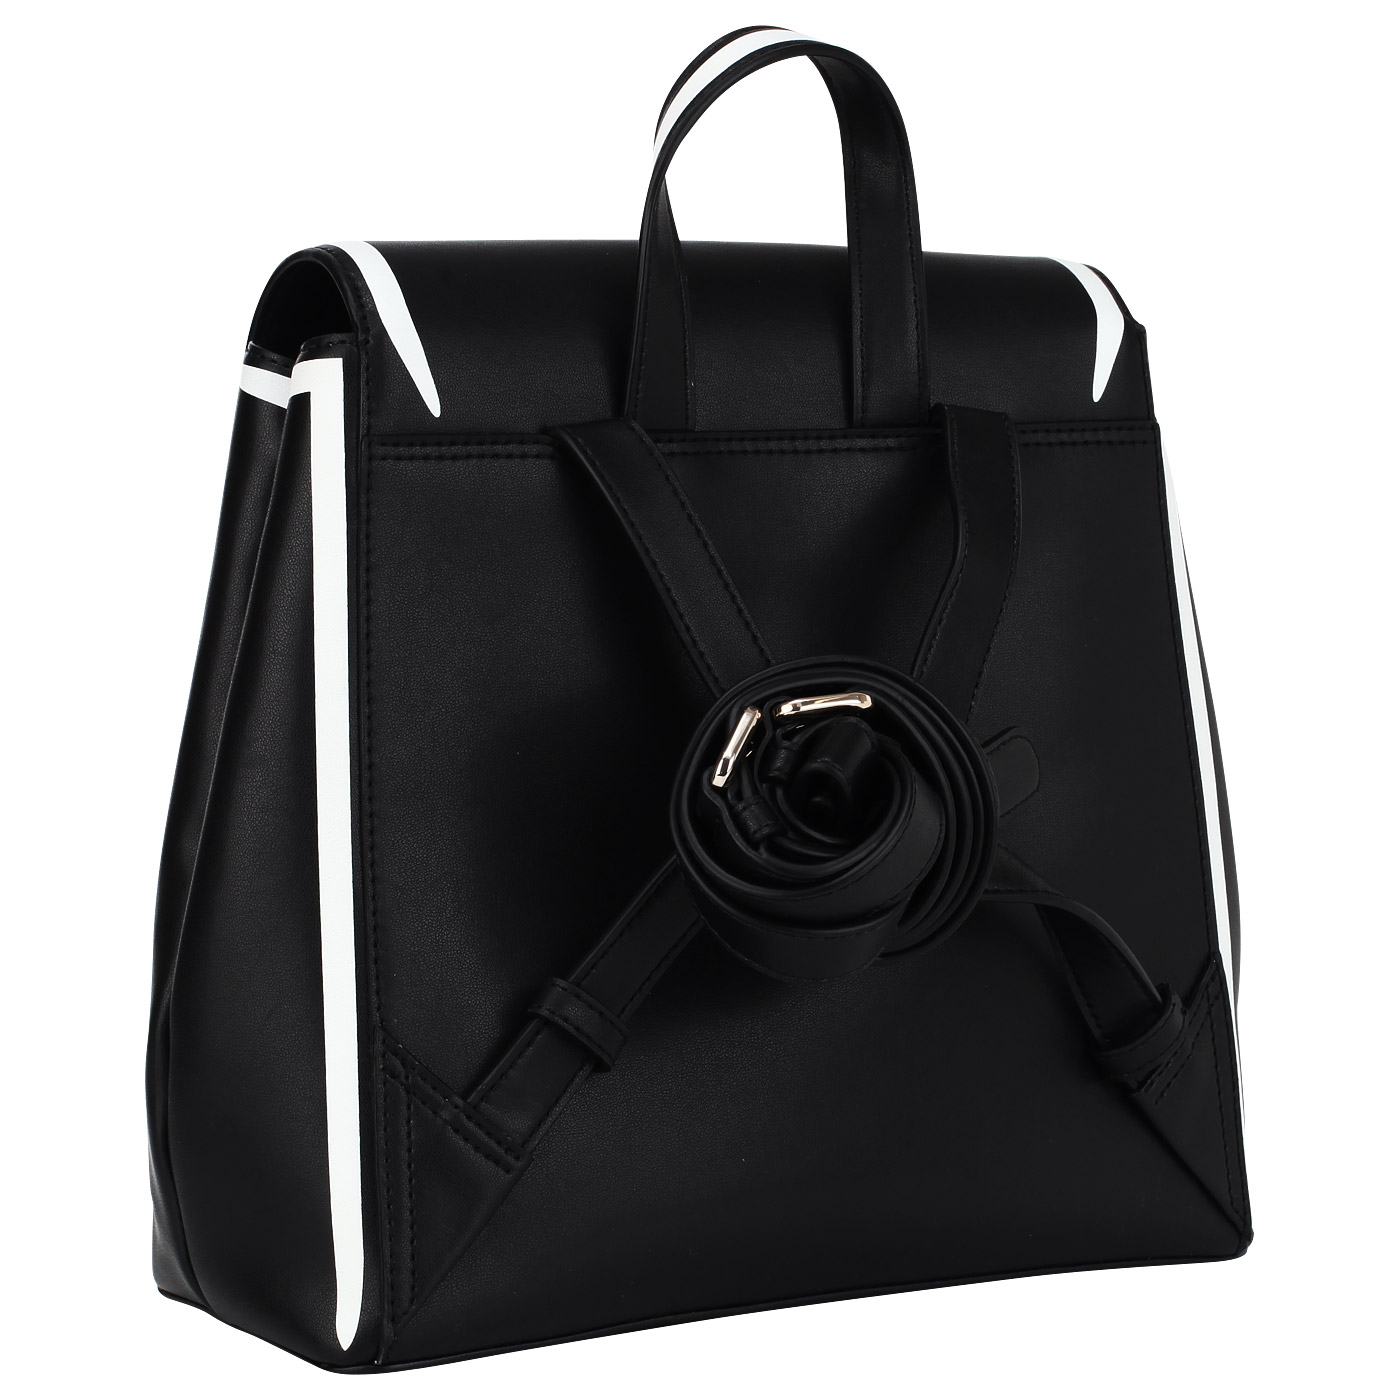 Черный кожаный рюкзак DKNY Jade